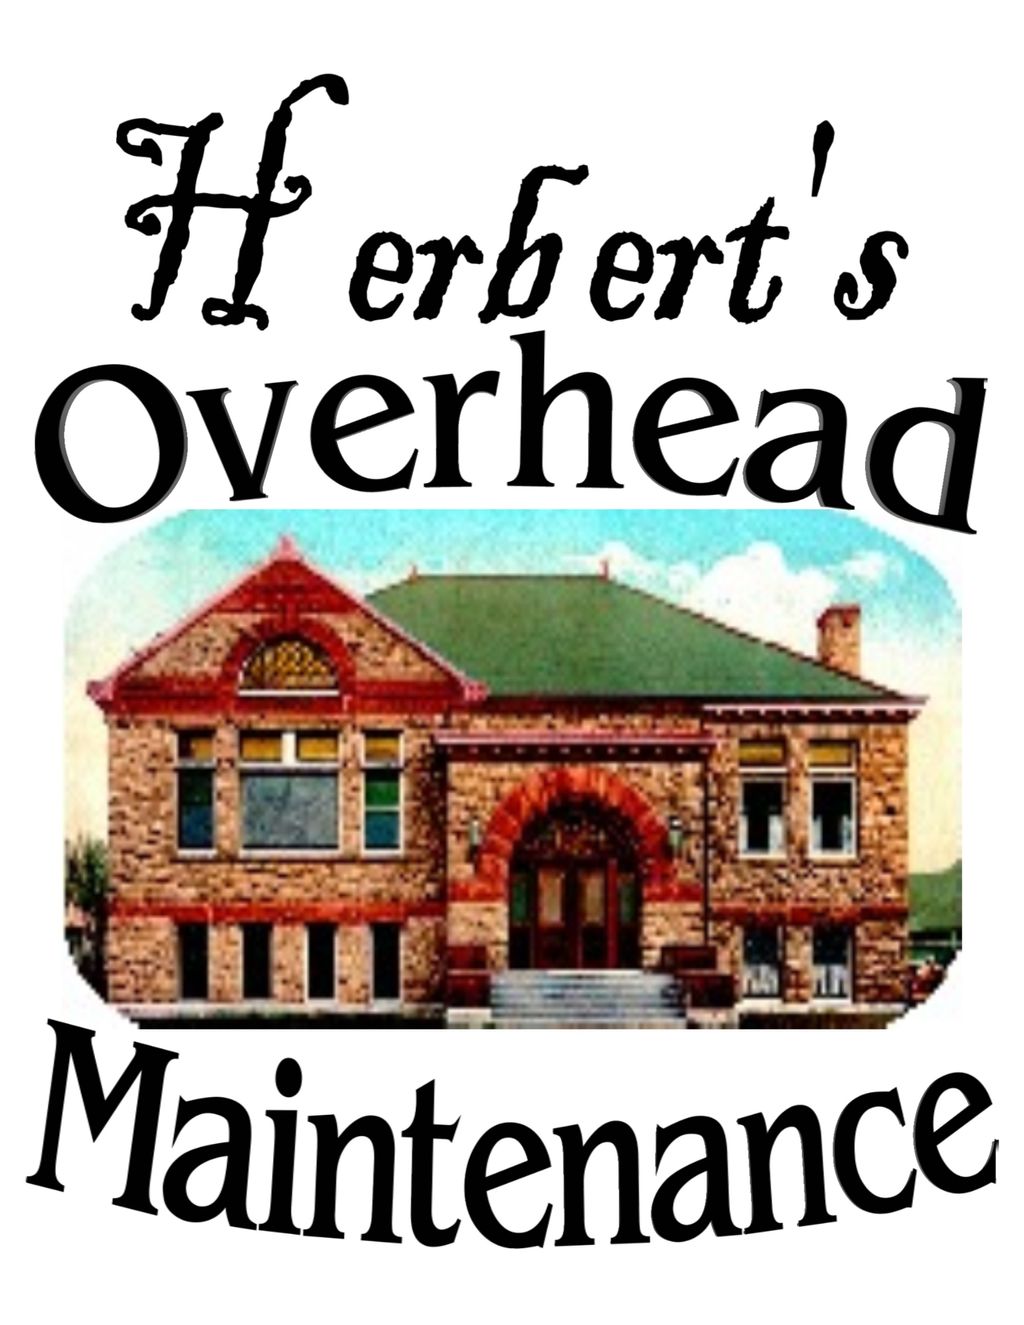 Herbert's Overhead Maintenance